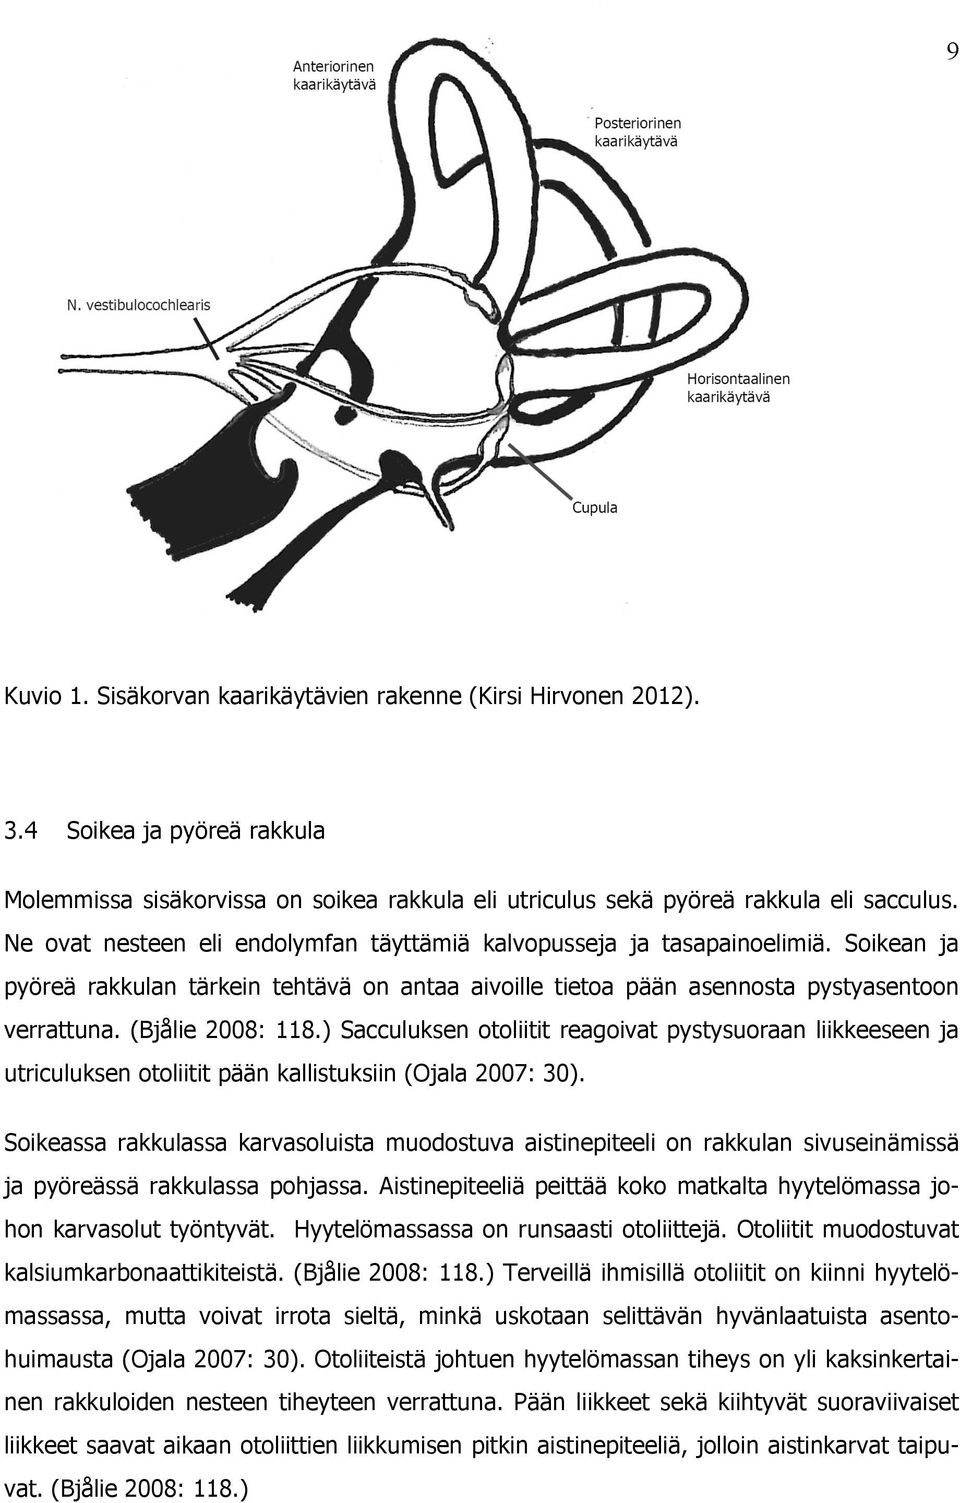 (Bjålie 2008: 118.) Sacculuksen otoliitit reagoivat pystysuoraan liikkeeseen ja utriculuksen otoliitit pään kallistuksiin (Ojala 2007: 30).